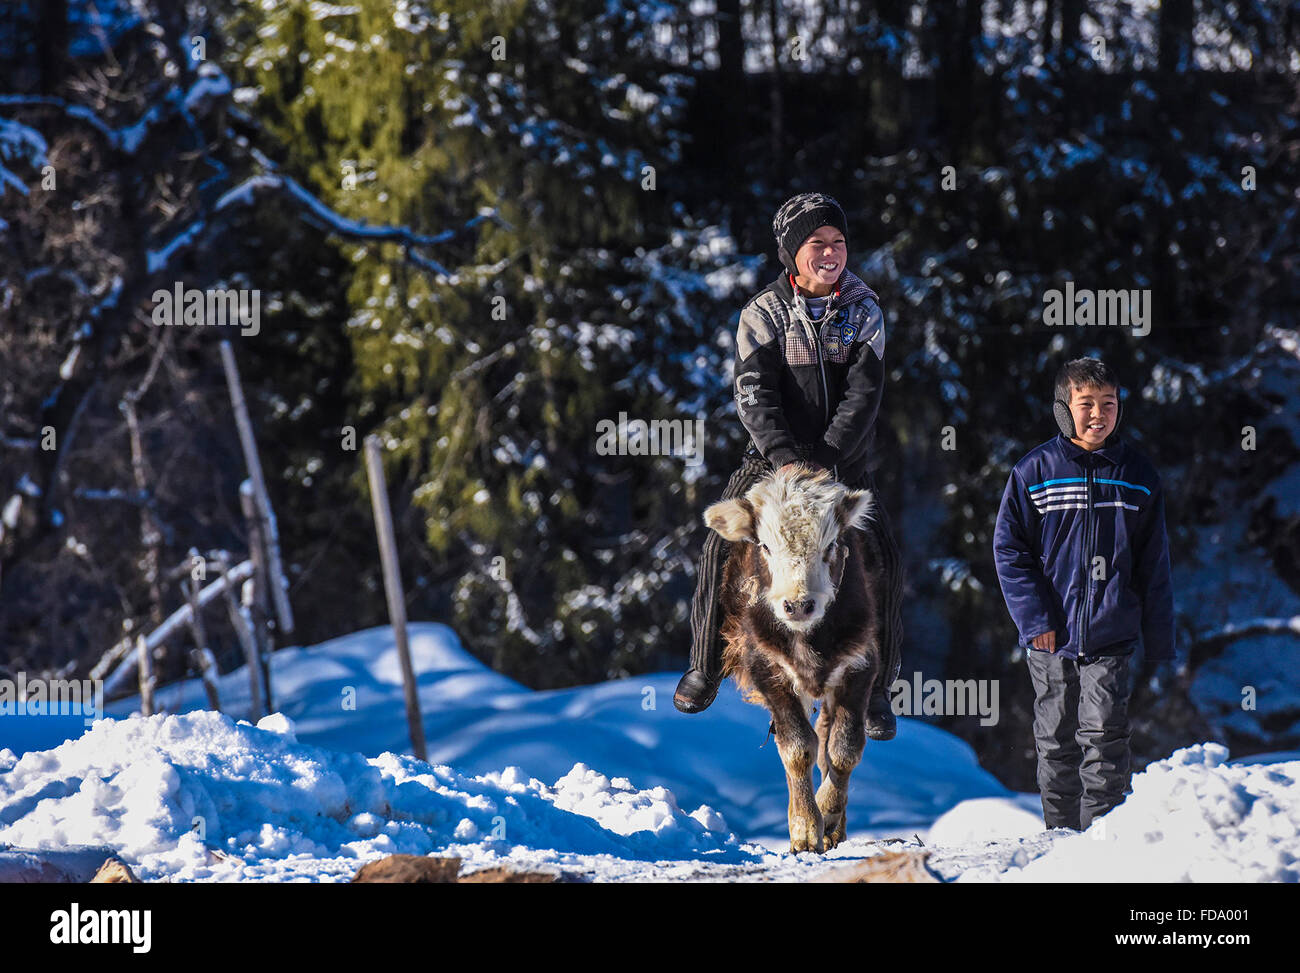 (160129) -- TEKES(XINJIANG), le 29 janvier 2016 (Xinhua) -- Les garçons jouent avec un veau dans un village des Monts Tianshan au dans le comté de Tekes, nord-ouest de la Chine, la Région autonome du Xinjiang Uygur, le 24 janvier 2016. Ehinic Kazak bergers des Monts Tianshan dans groupe vivent dans des maisons en bois pour se garder au chaud en hiver, ce qui est un trait typique de leur vie nomade traditionnel. (Xinhua/Shen Qiao) (TWA) Banque D'Images